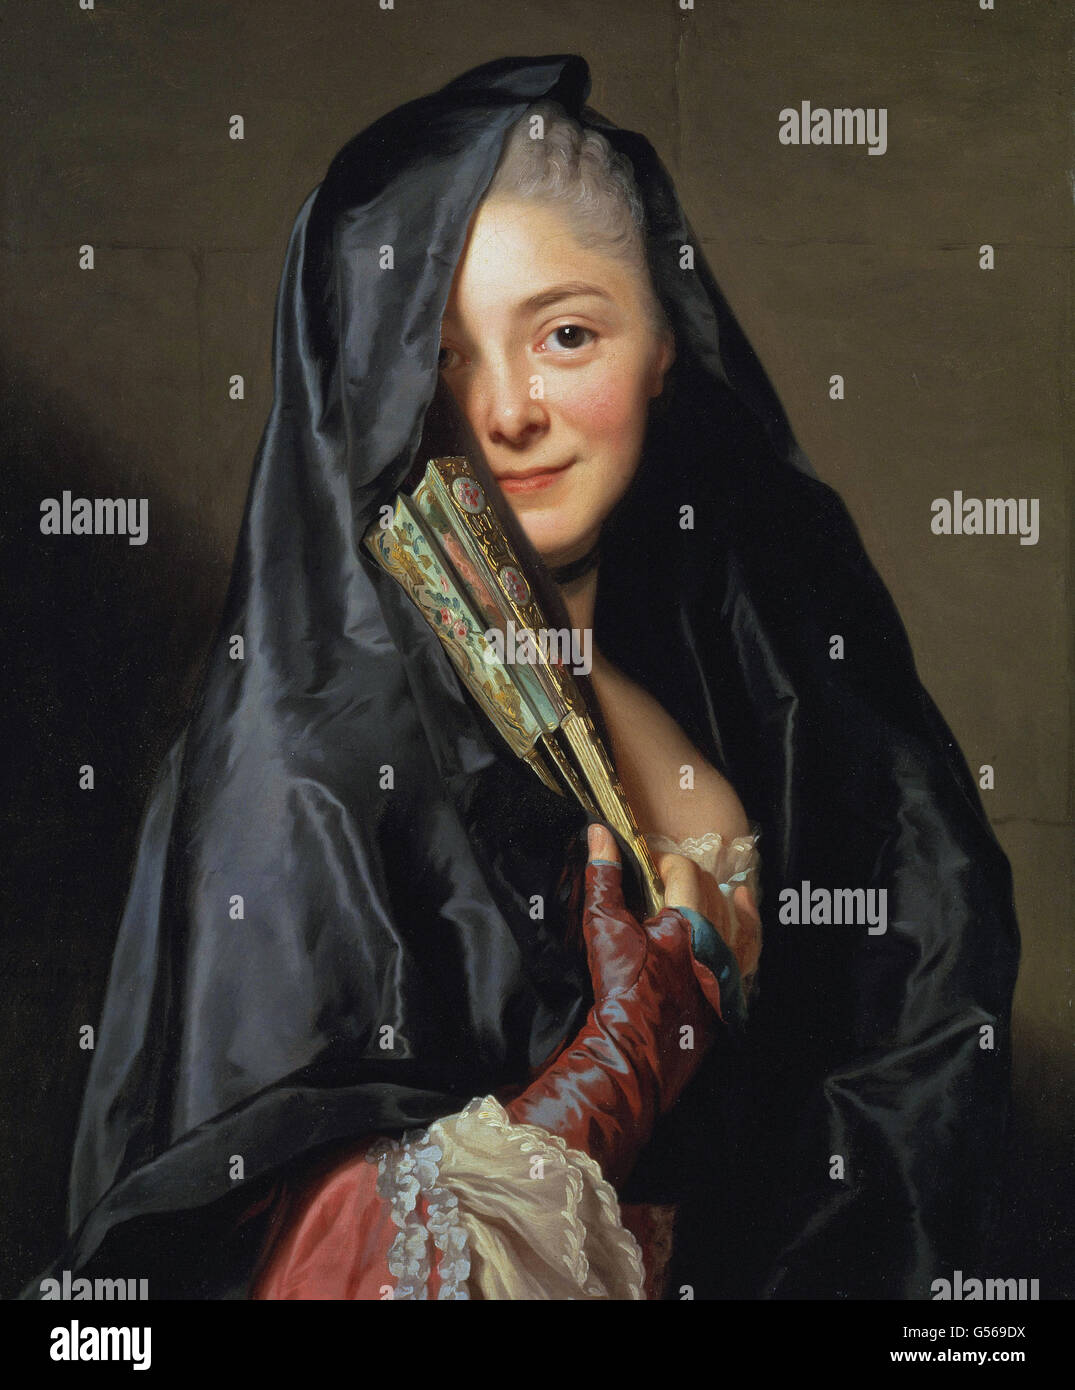 Alexander Roslin - La signora con il velo (l'artista della moglie) Foto Stock